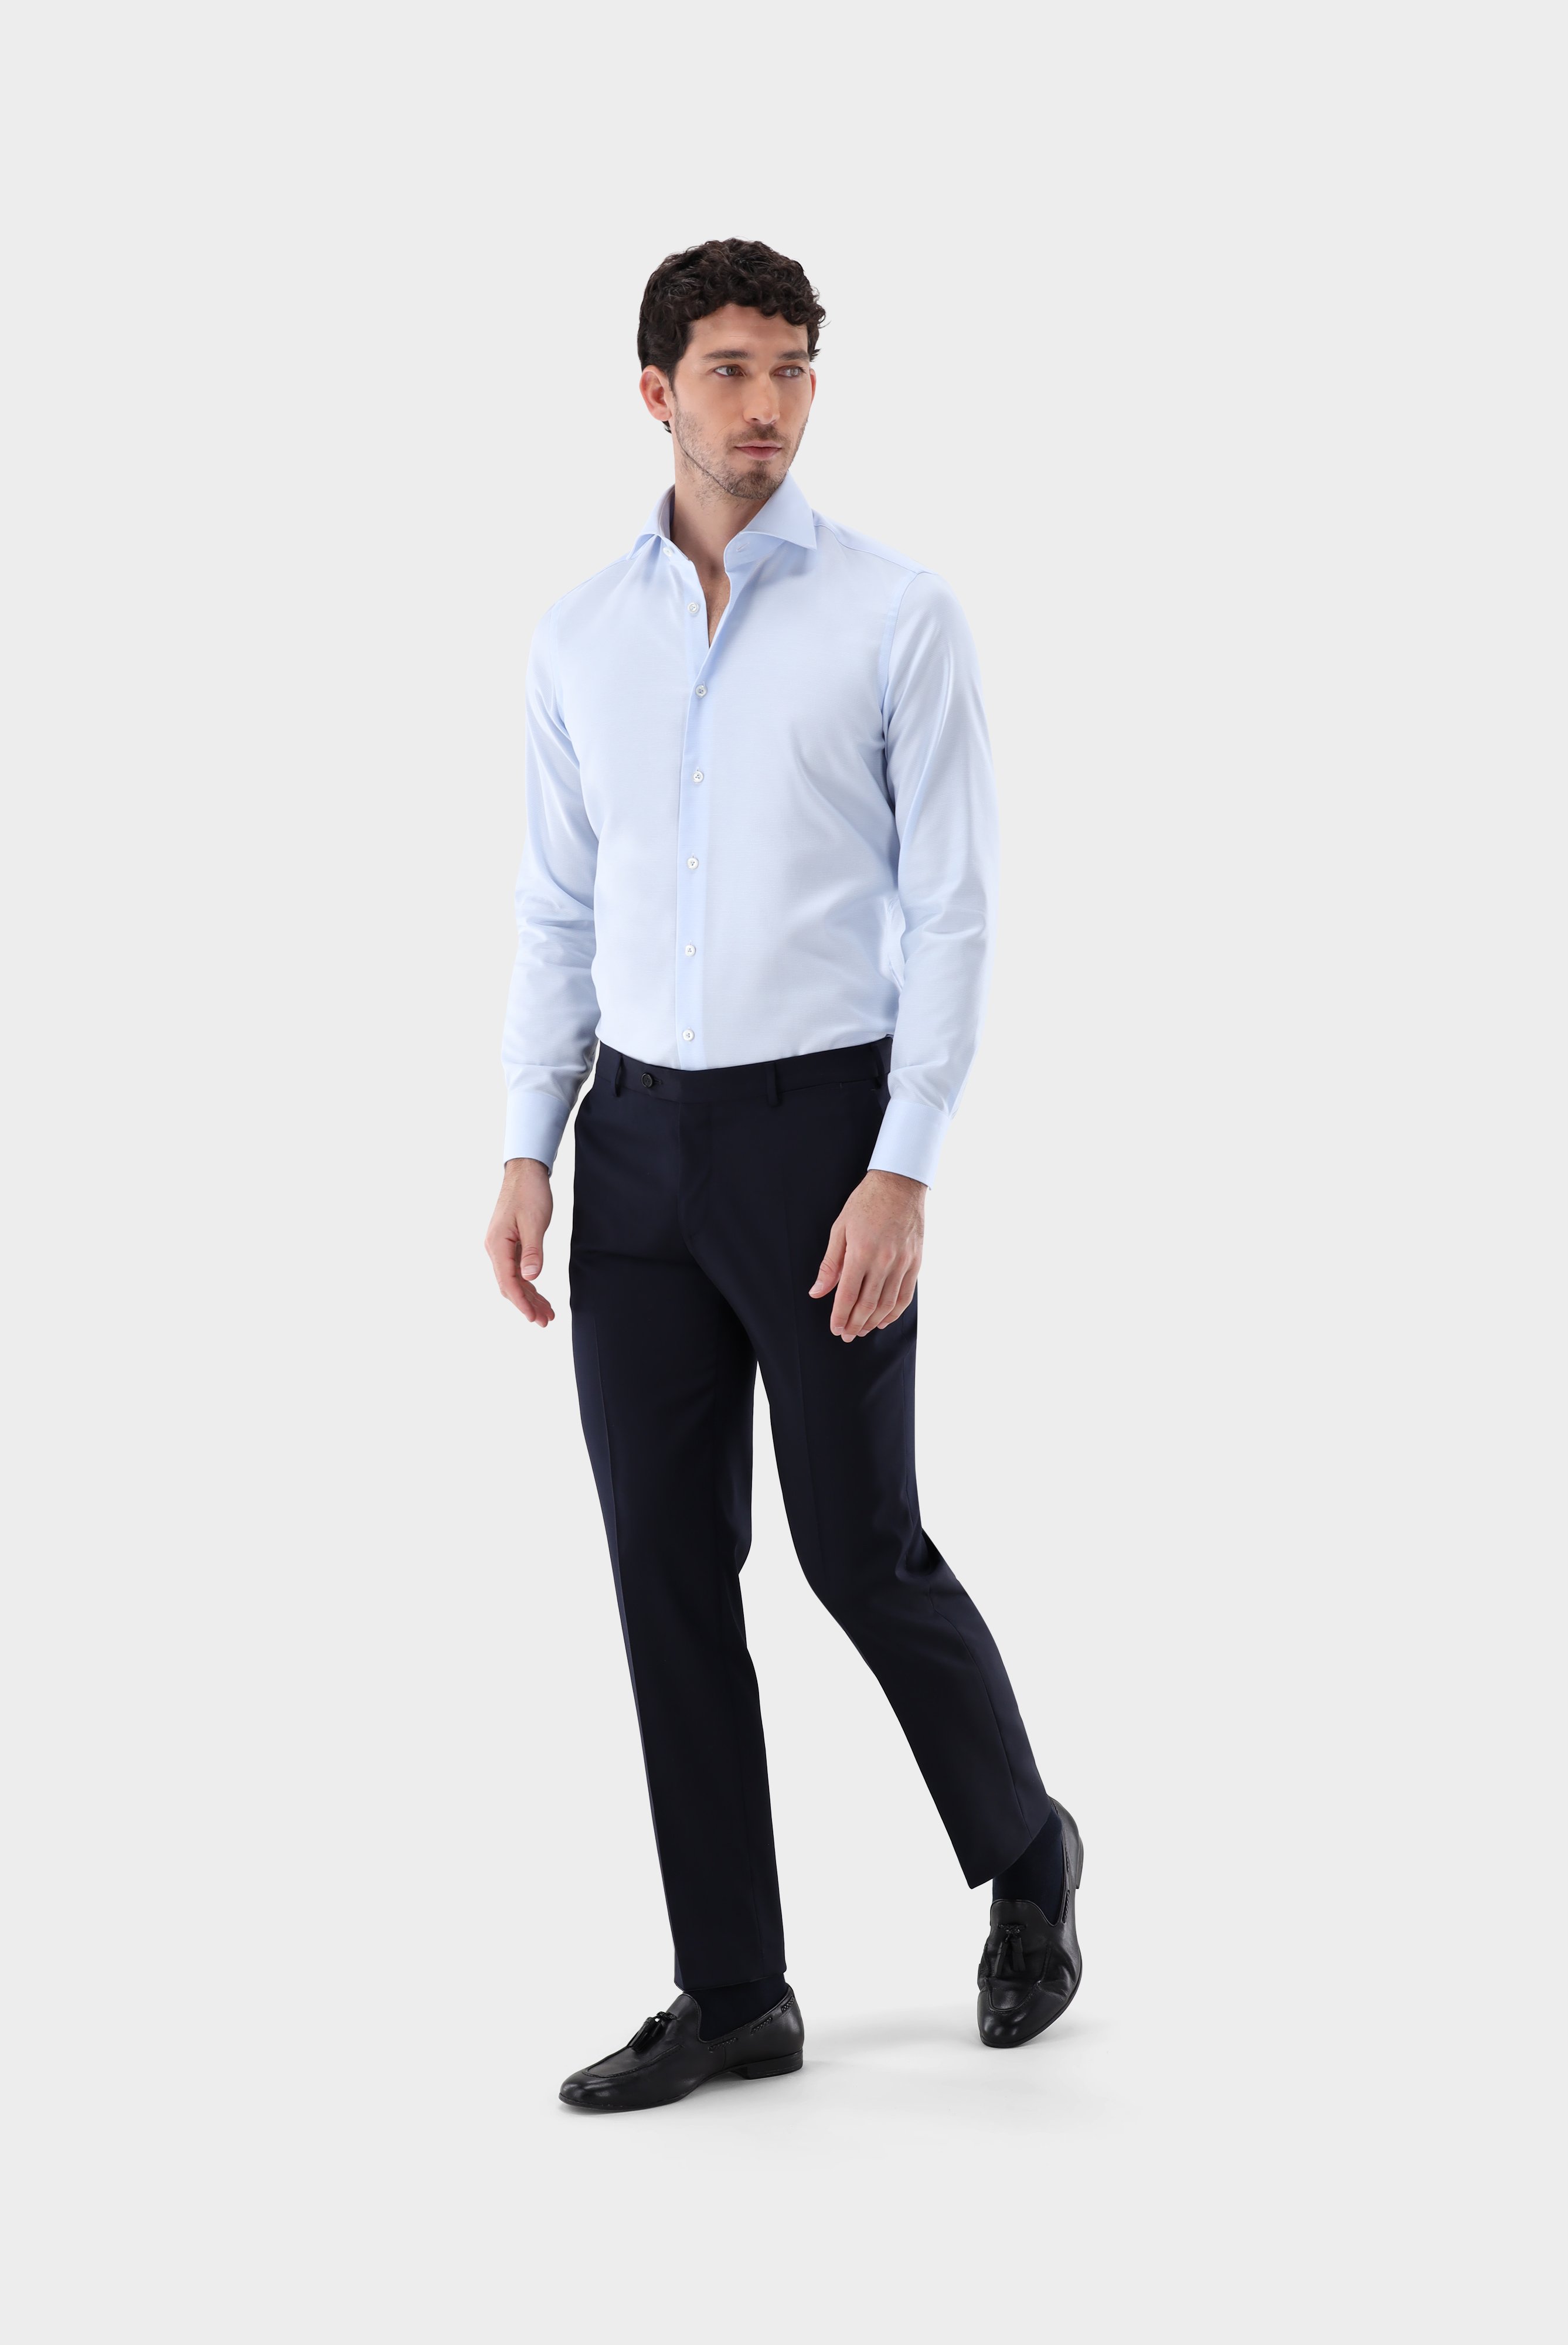 Business Hemden+Twill Hemd mit Struktur Tailor Fit+20.2020.AV.161265.710.37